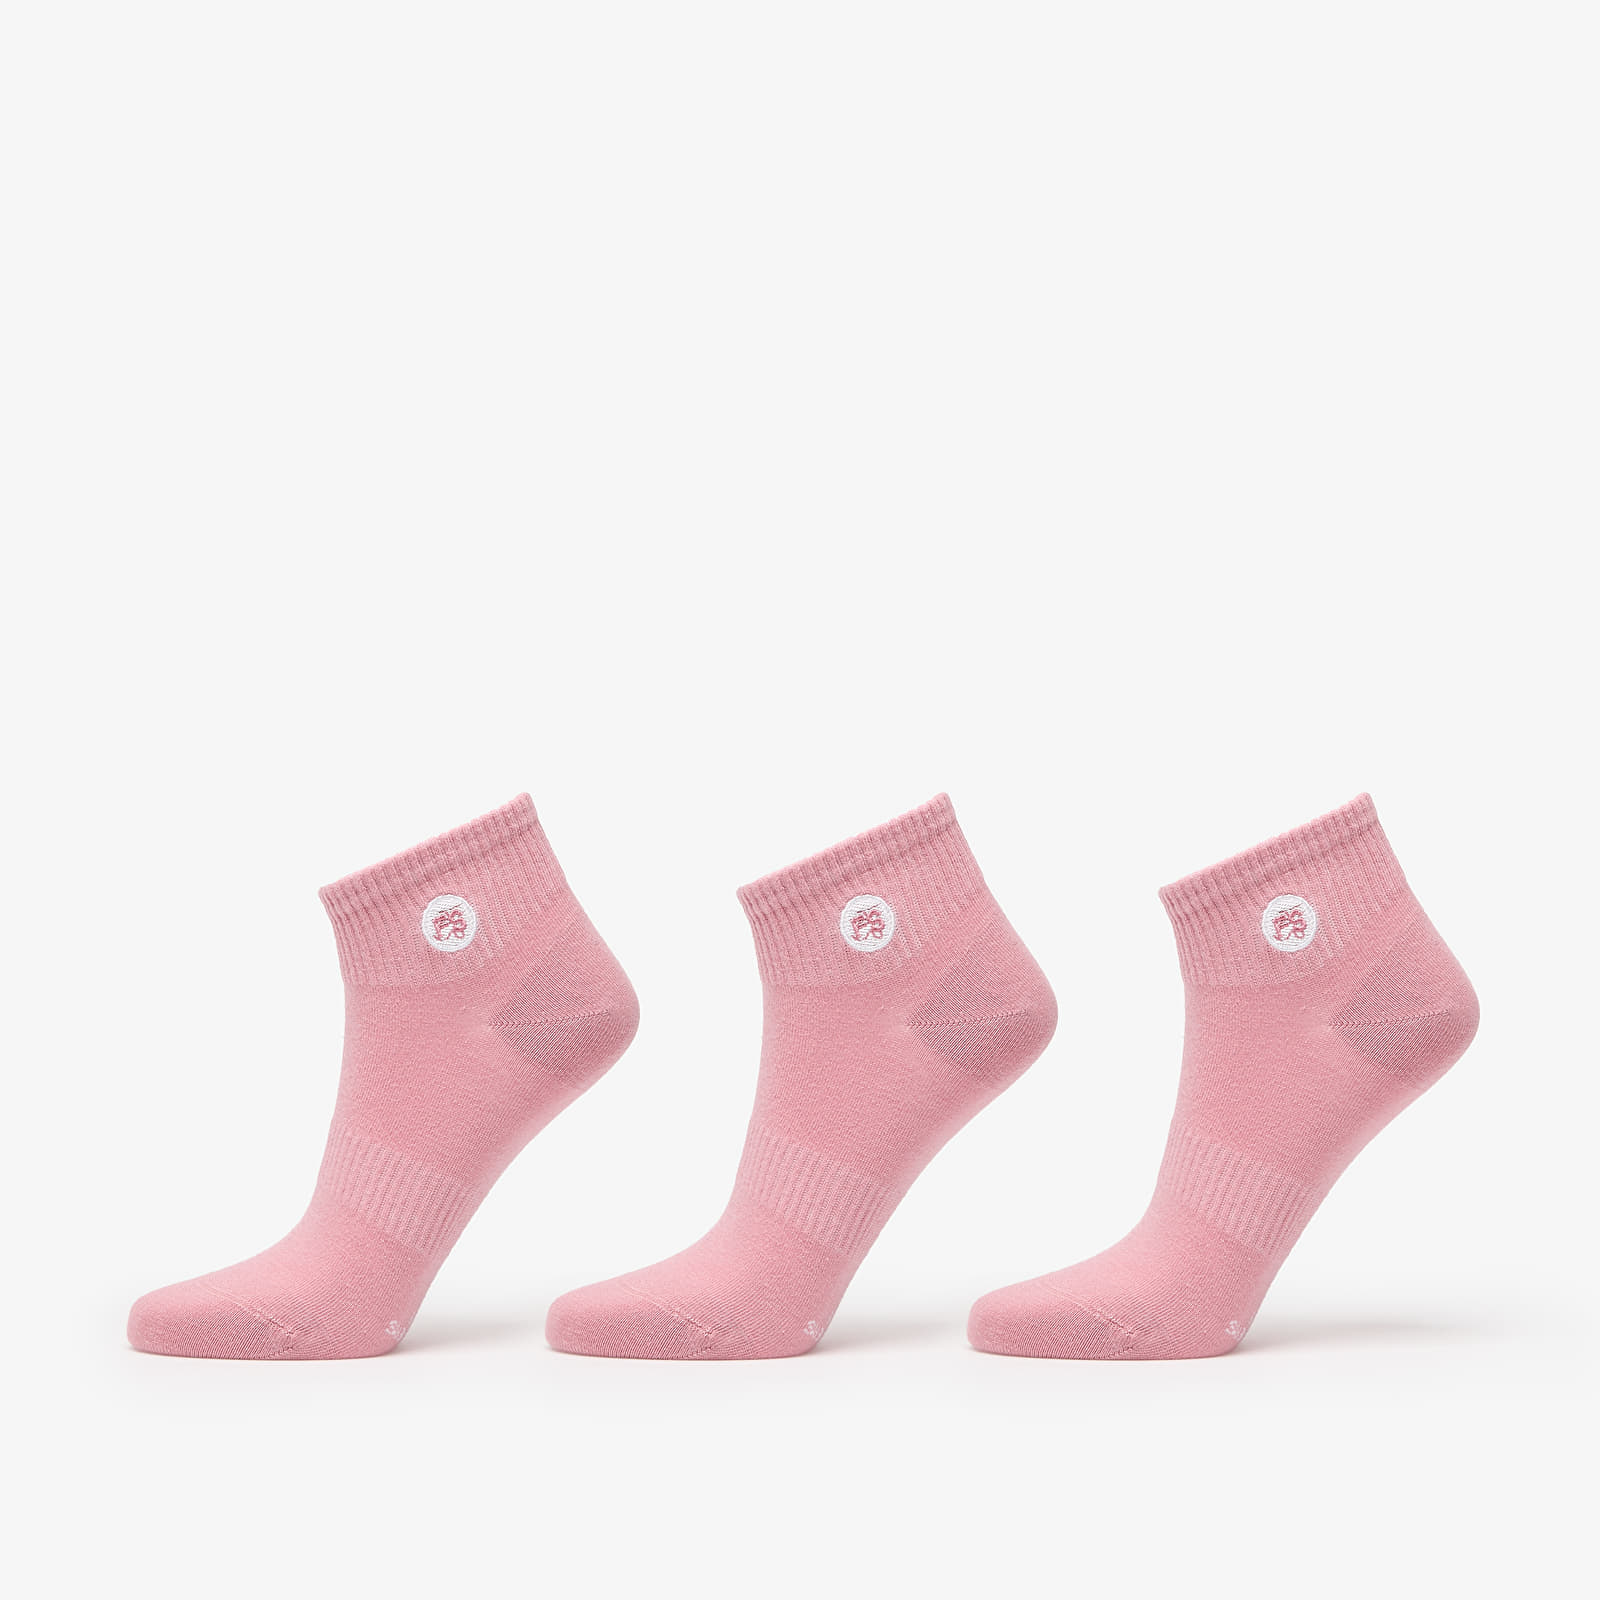 Zoknik Footshop Ankle Socks 3-Pack Pink